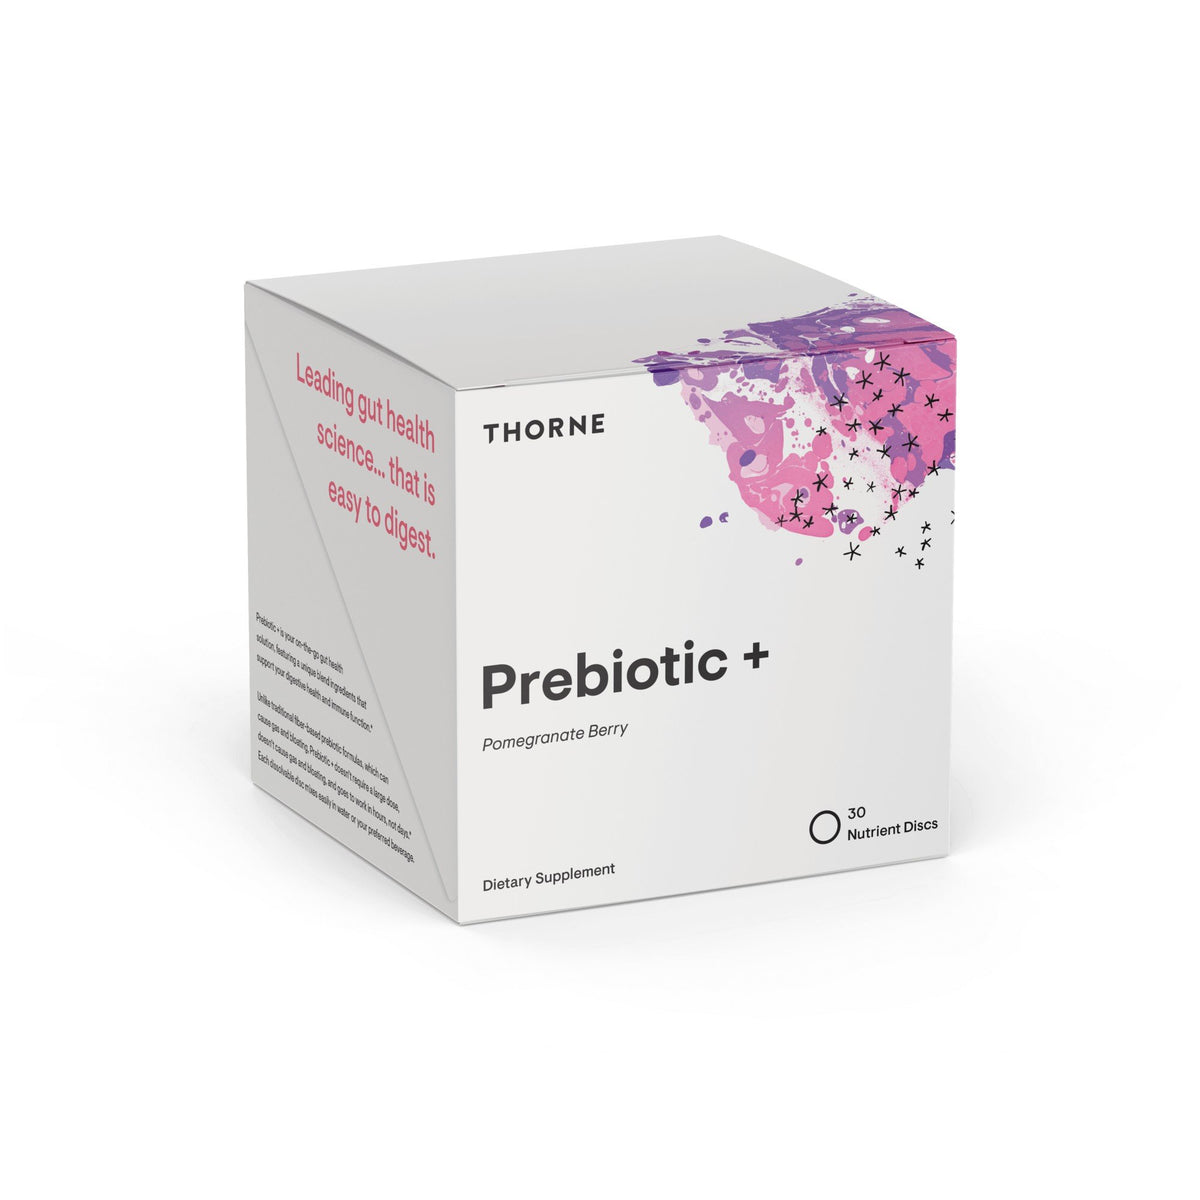 Thorne Prebiotic + 30 Nutrient Discs